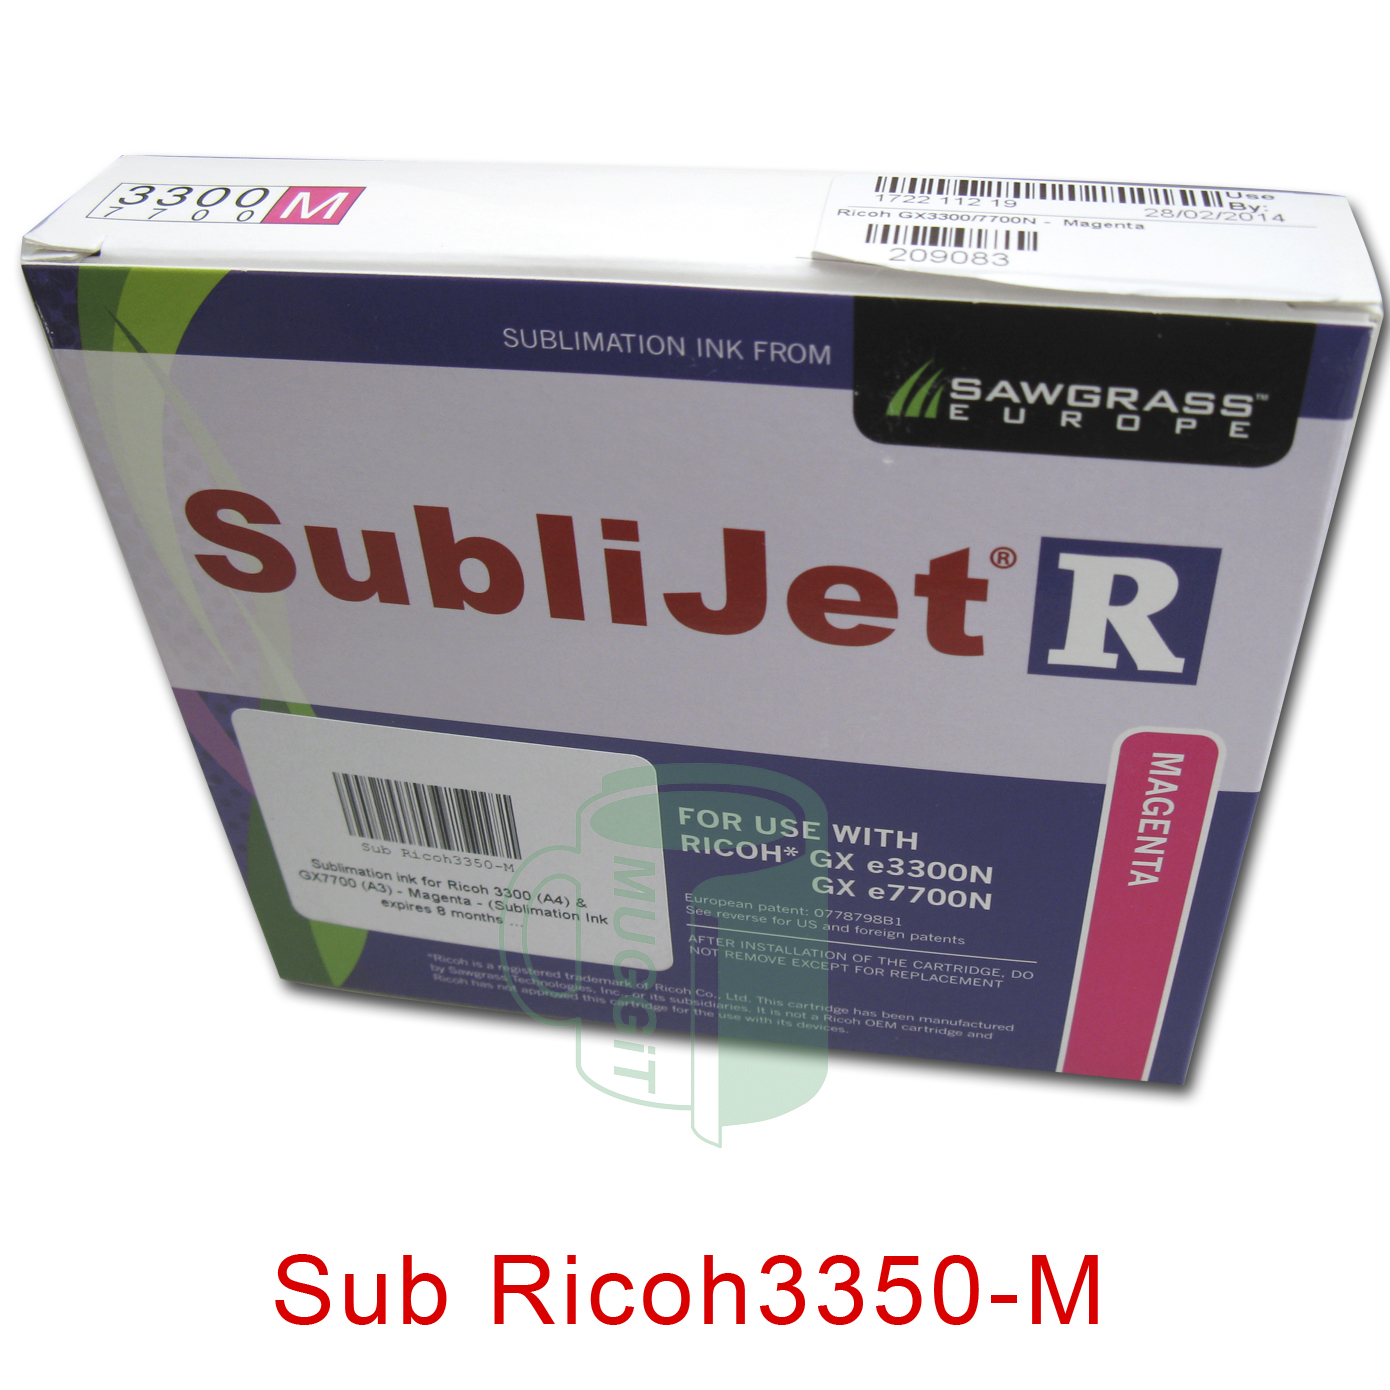 Sub Ricoh3350-M